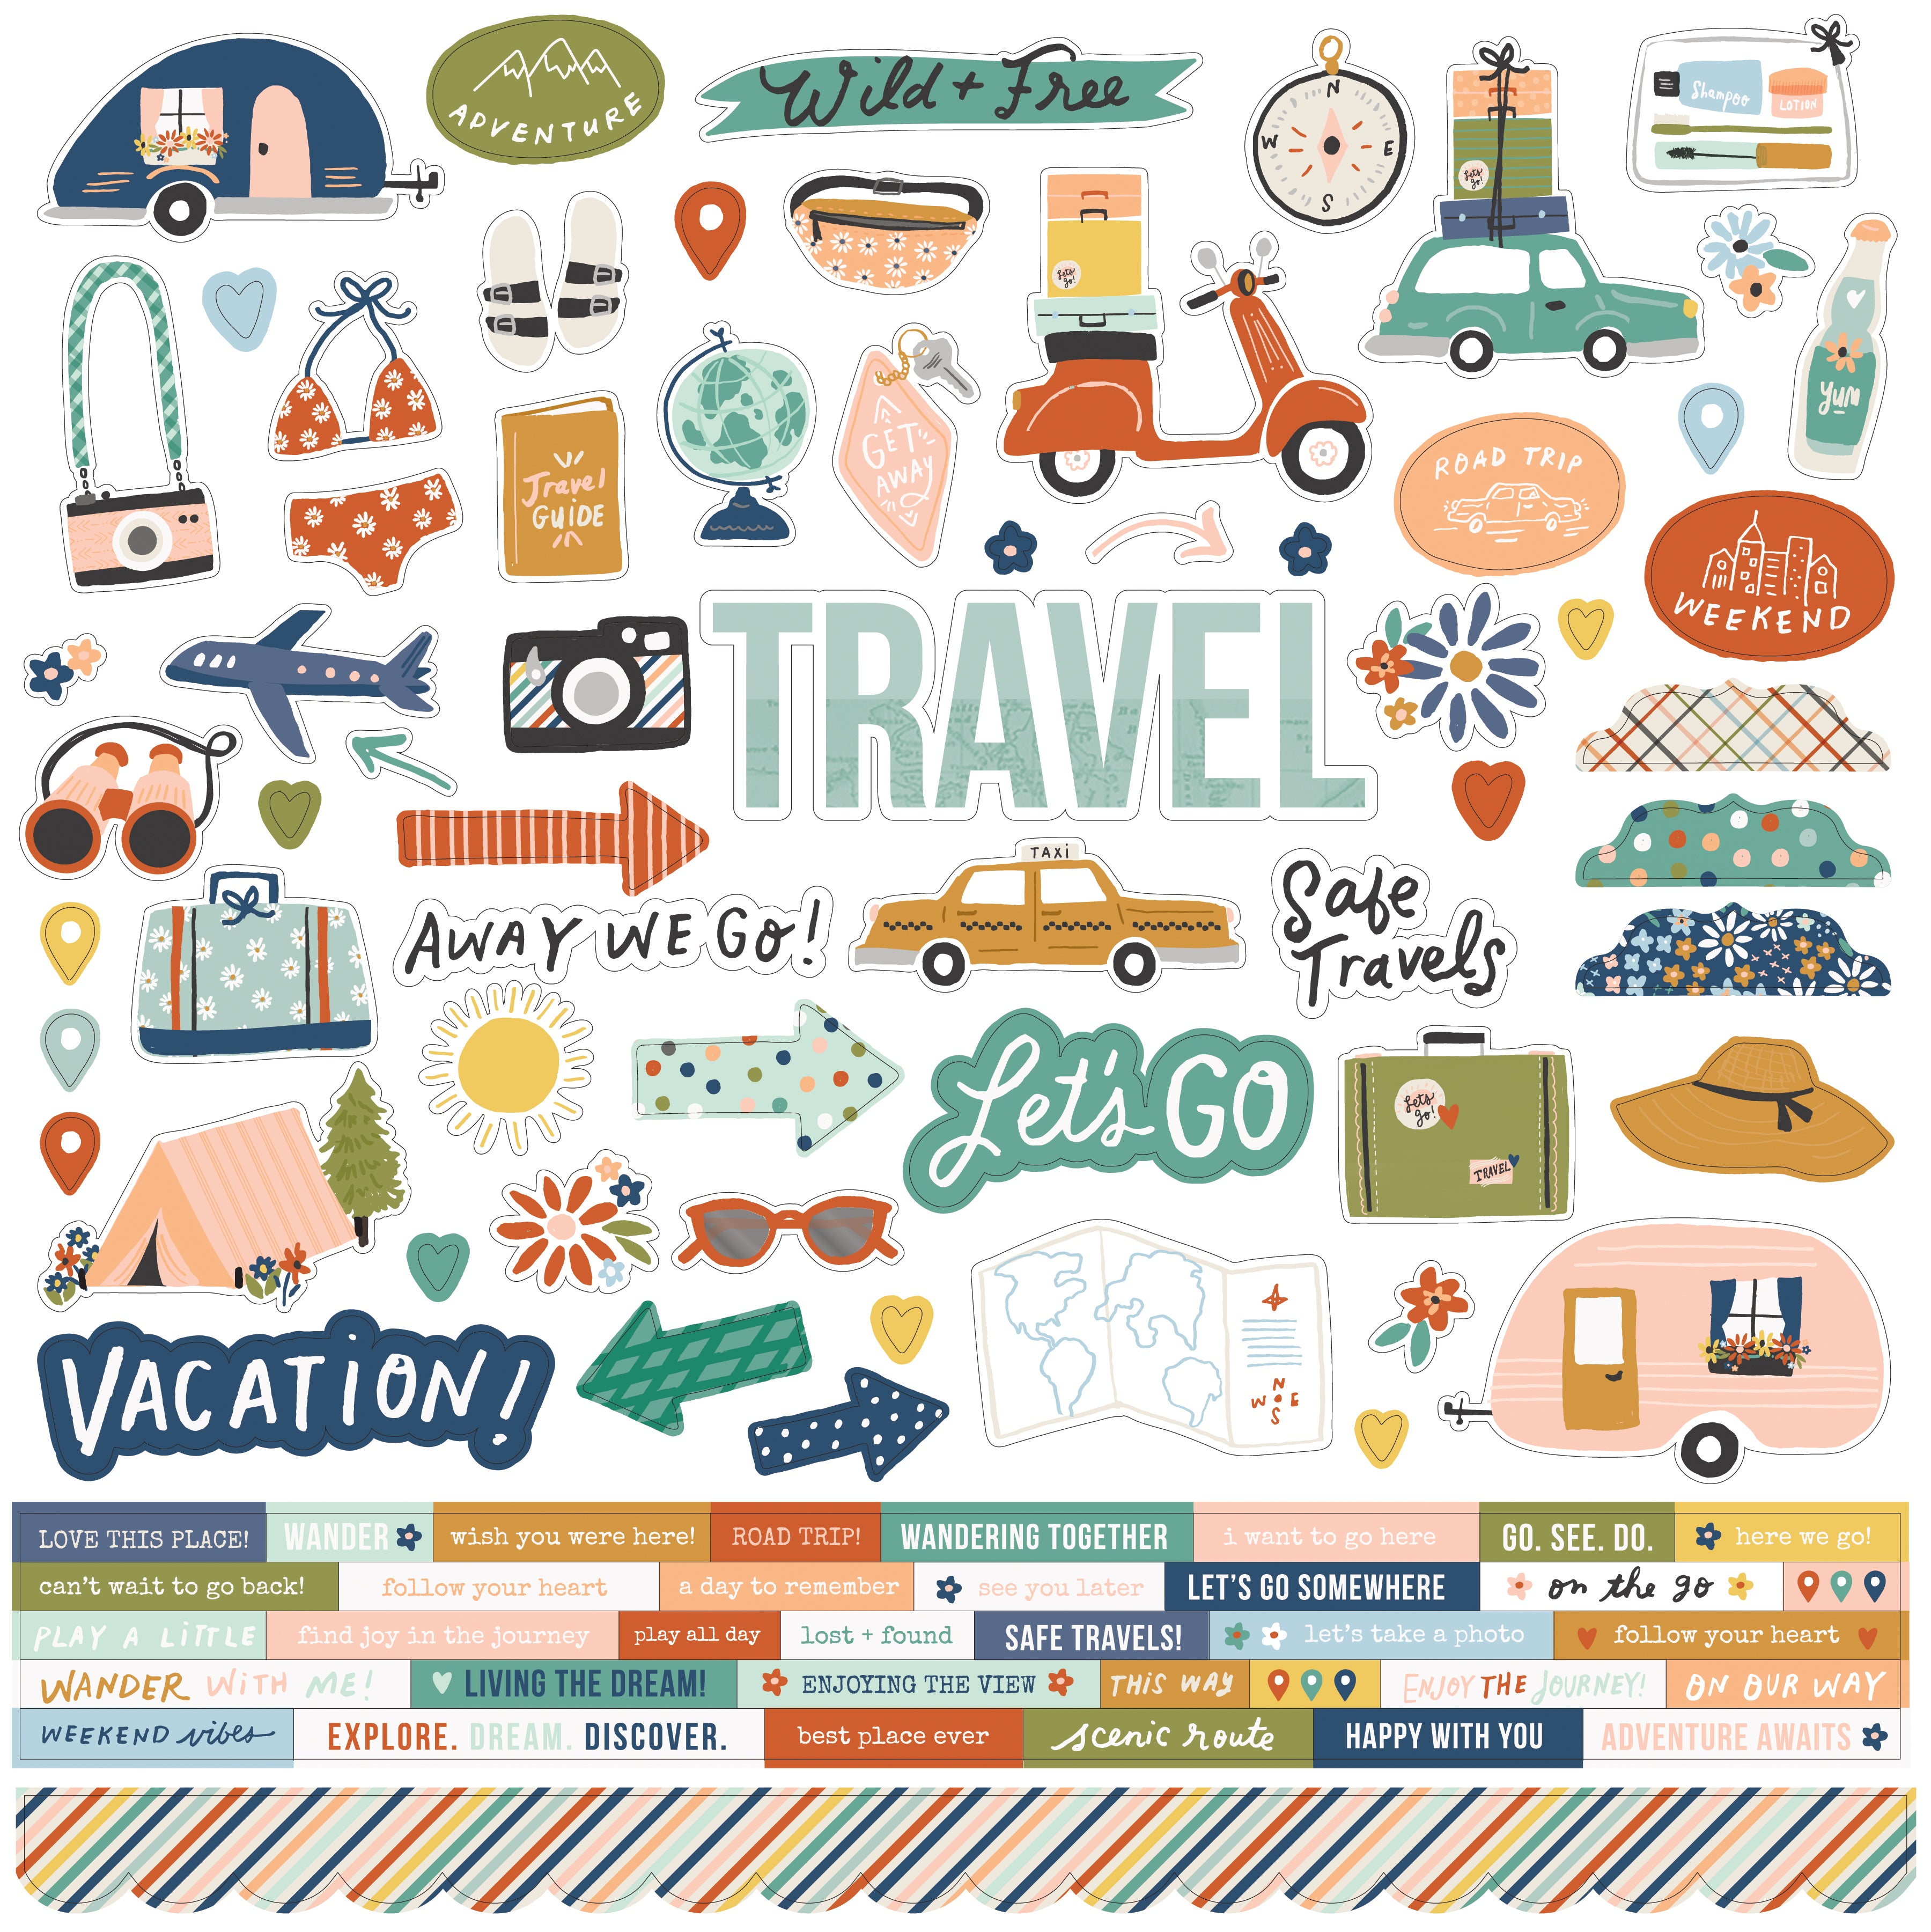 Travel Scrapbook Kit, Adventure Awaits Journal, Travel Journal